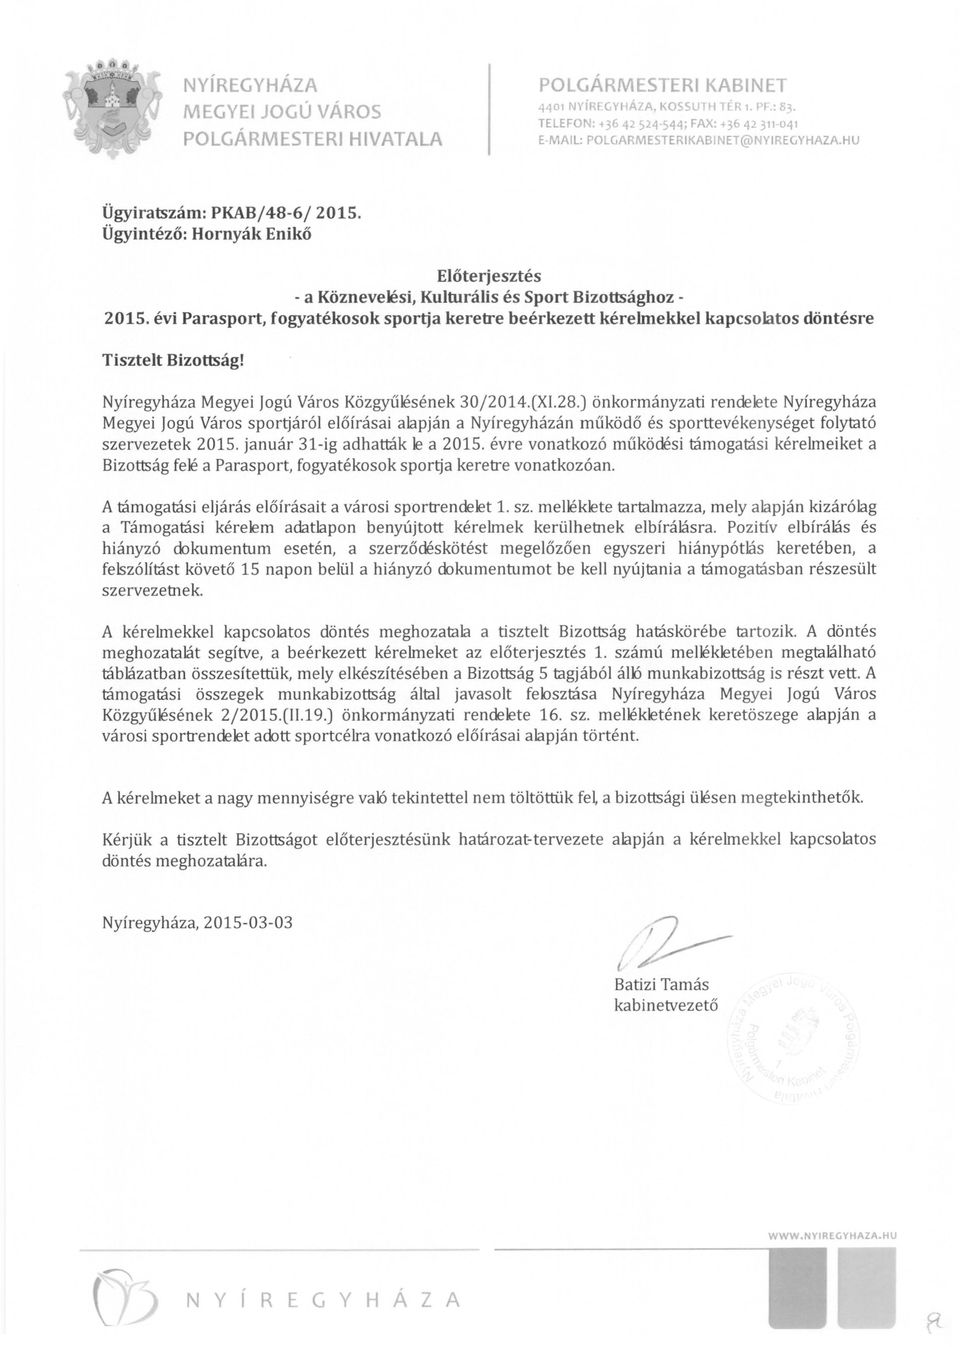 Ügyintéző: Hornyák Enikő Előterjesztés - a Köznevelési, Kulturális és Sport Bizottsághoz 2015.